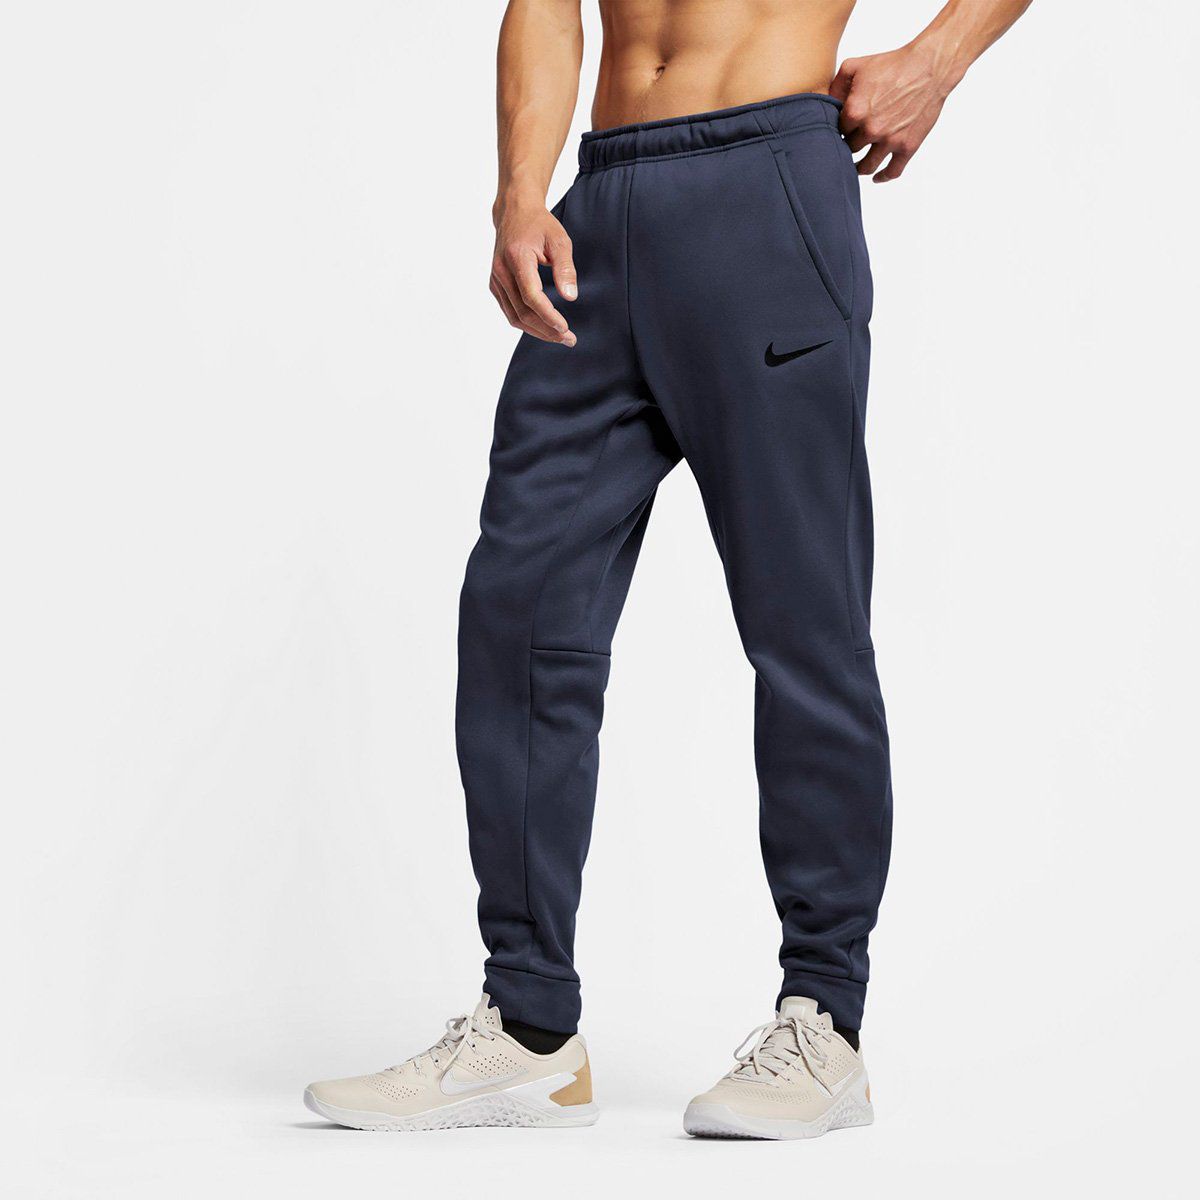 Calça Moletom Nike Therma Taper Masculina - Azul+Preto - Claus Sports -  Loja de Material Esportivo - Tênis, Chuteiras e Acessórios Esportivos